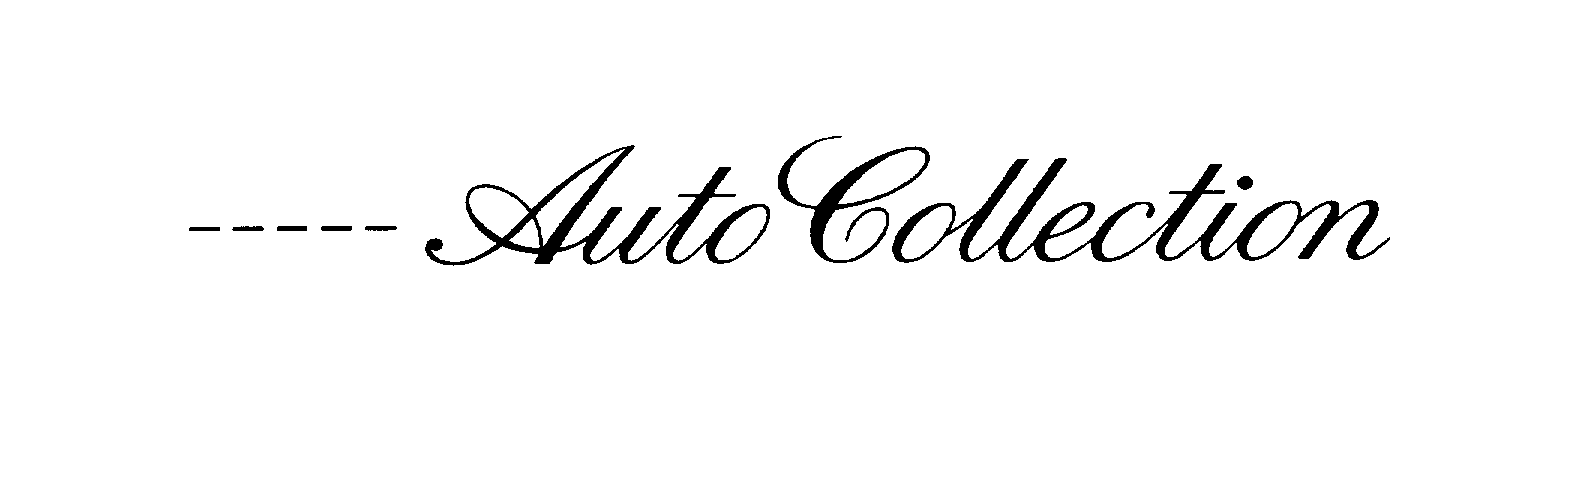 Trademark Logo ----- AUTO COLLECTION